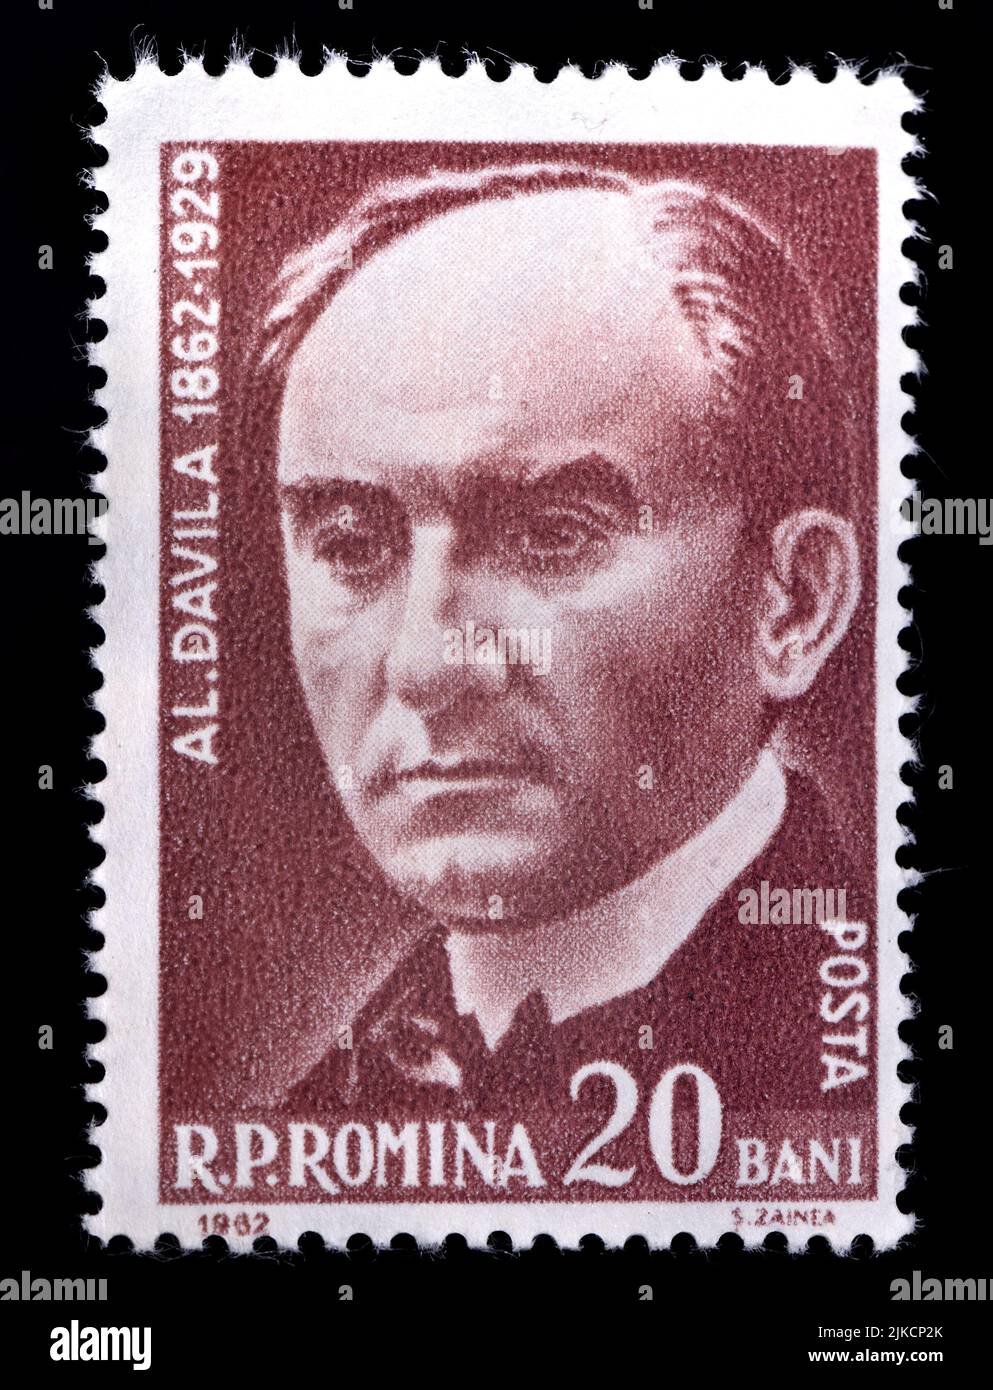 Rumänische Briefmarke (1962) : Alexandru Davila (1862-1929) Rumänischer Dramatiker, Diplomat, öffentlicher Verwalter und Tagebuchschreiber Stockfoto